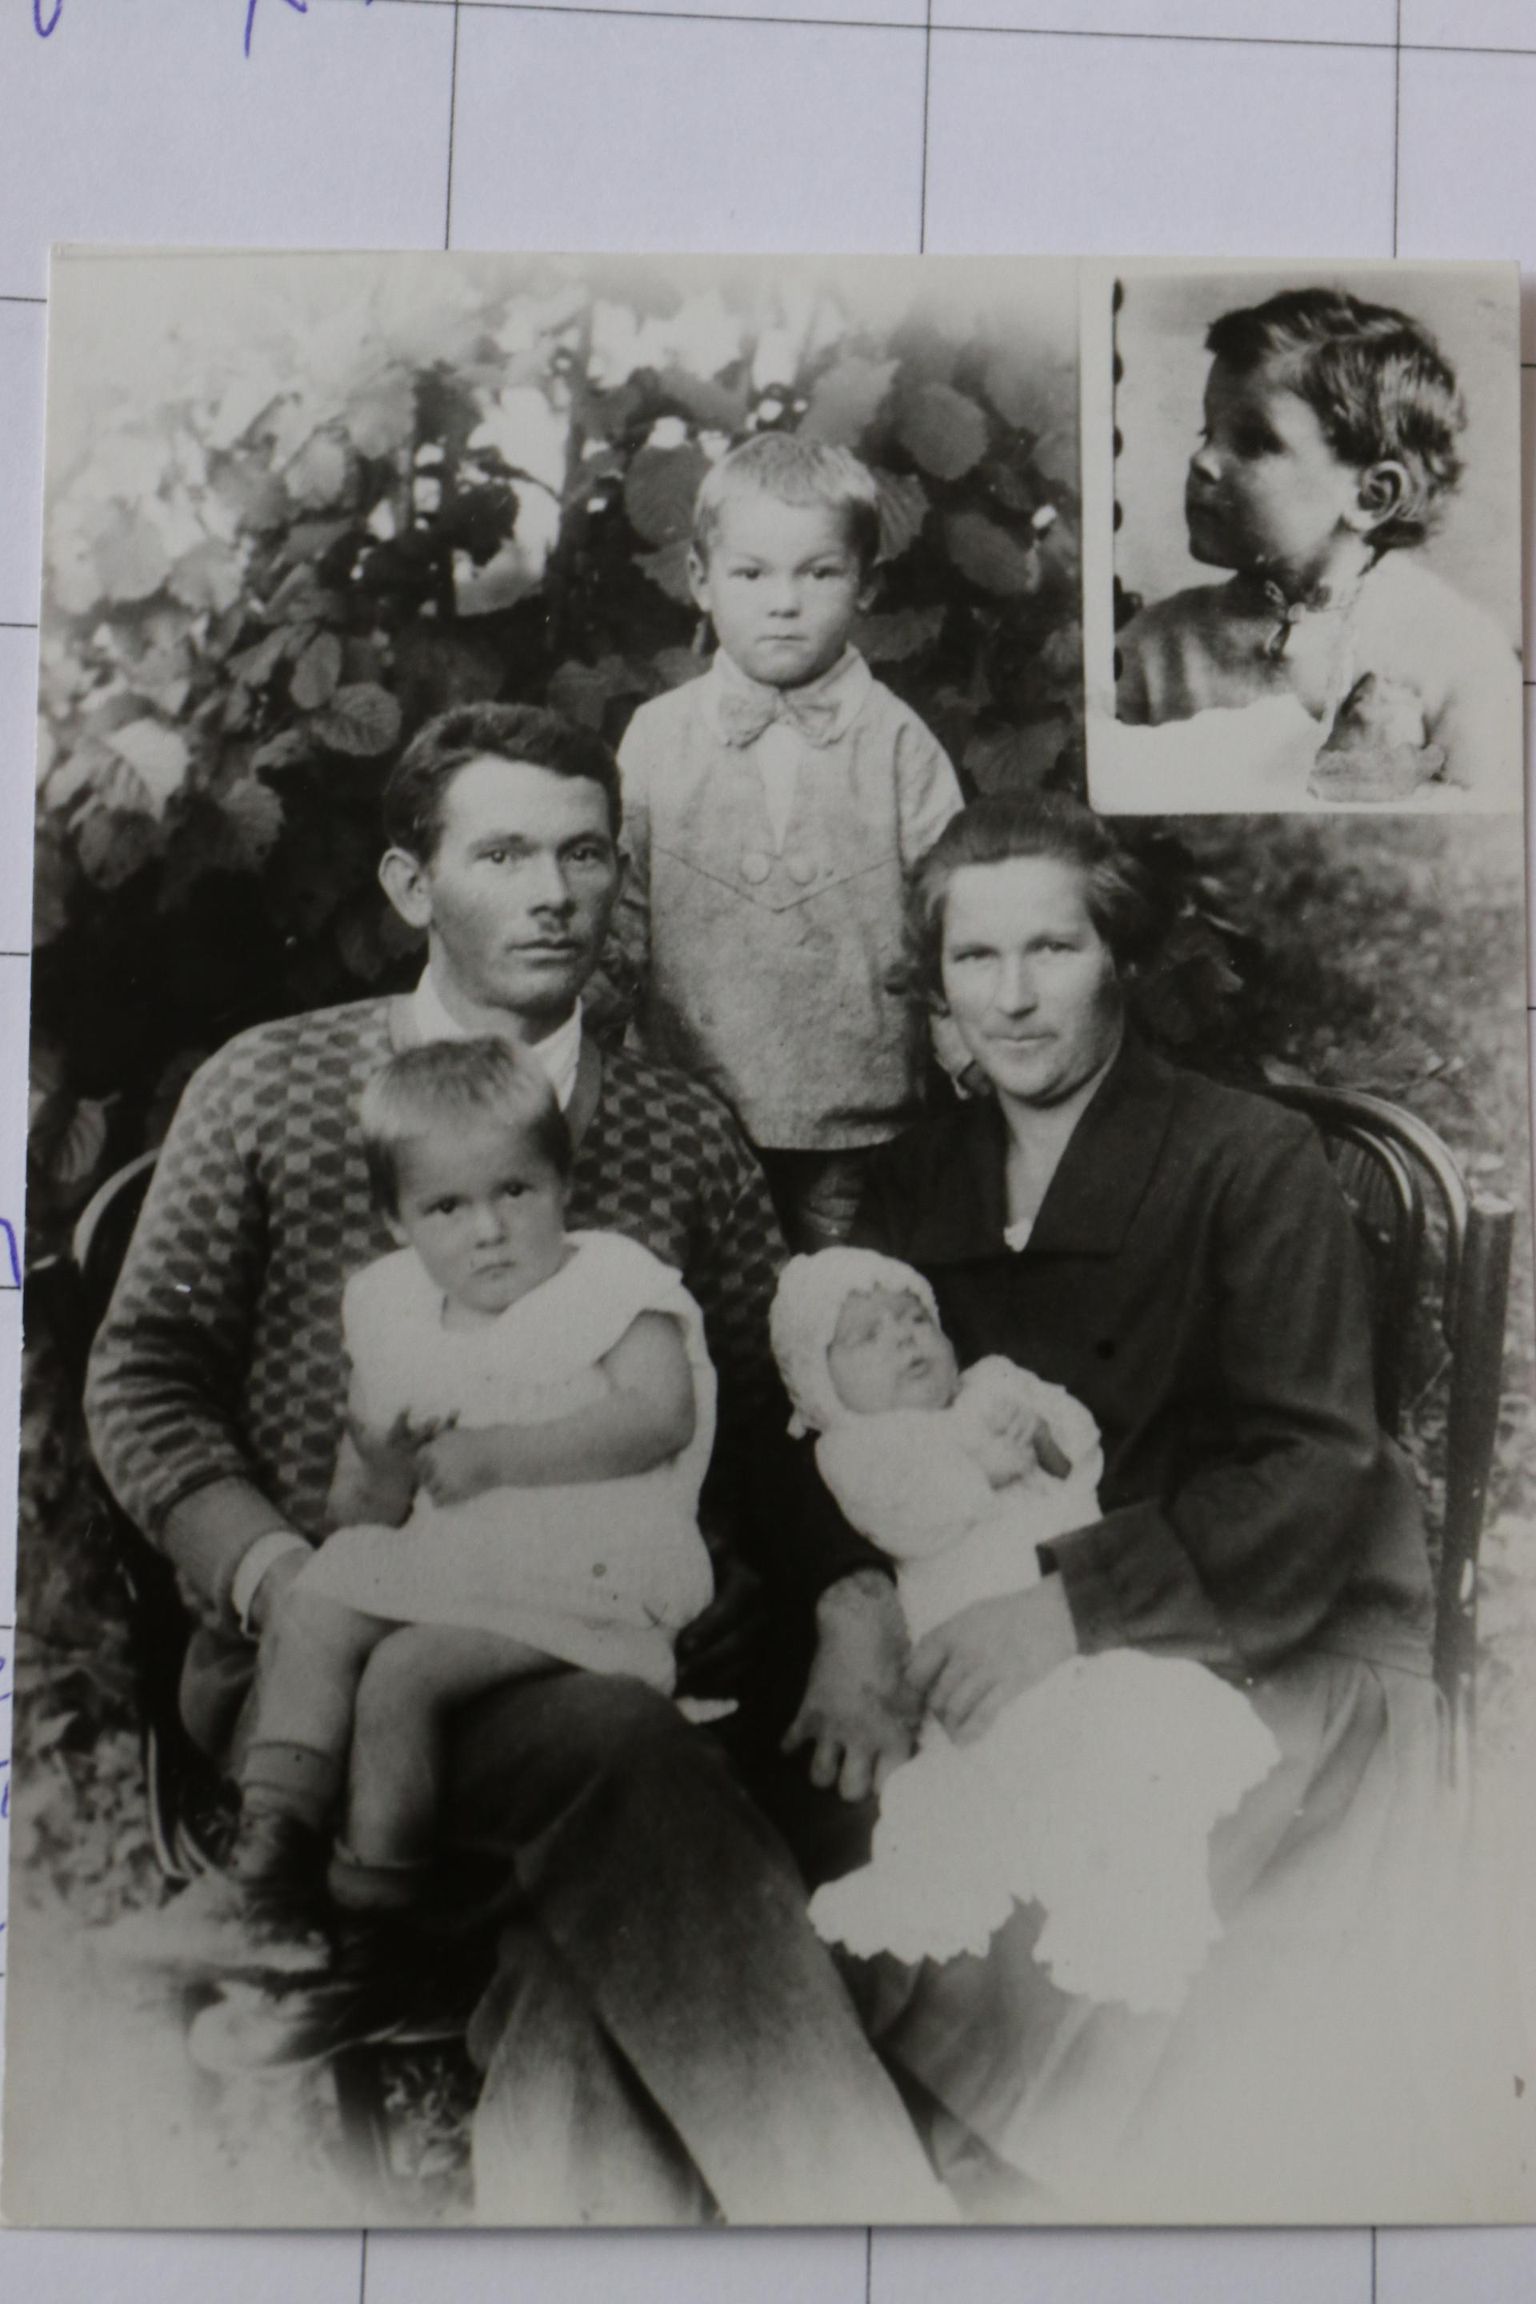 Kaukaasias asunud Uus-Eesti küla puusepp Osvald Kevvai 1930ndate algul tehtud fotol koos abikaasa ja lastega. Venemaa eestlaste ohvrinimekirja järgi arreteeris Nõukogude julgeolekuteenistus NKVD ta 29. juulil 1938. aastal. Kaks kuud hiljem mõisteti 37-aastane Osvald surma ja oktoobris lasti ta Krasnodaris maha. Täiesti absurdse süüdistuse järgi kuulus ta alates 1934. aastast «Eesti natsionalistlikkusse ja kontrrevolutsioonilisse diversiooni-spionaaži terroristlikkusse organisatsiooni». NKVD arreteeris Osvaldiga koos Uus-Eesti külas ja selle kõrval asunud väiksemas eestlaste külas Banatovis vähemalt 102 meest ja ühe naise. Ära viidi sisuliselt veerand kahe küla elanikest. Neist vähemalt 99 hukati või peksti surnuks sama aasta oktoobris Krasnodaris, kuid nende pered elasid teadmatuses oma meeste ja isade saatuse kohta kuni 1950ndate lõpuni. Vaid neljal mehel õnnestus hiljem oma perekonnaga sidet luua ja vaid kaks meest jõudsid tagasi kodukülla. 